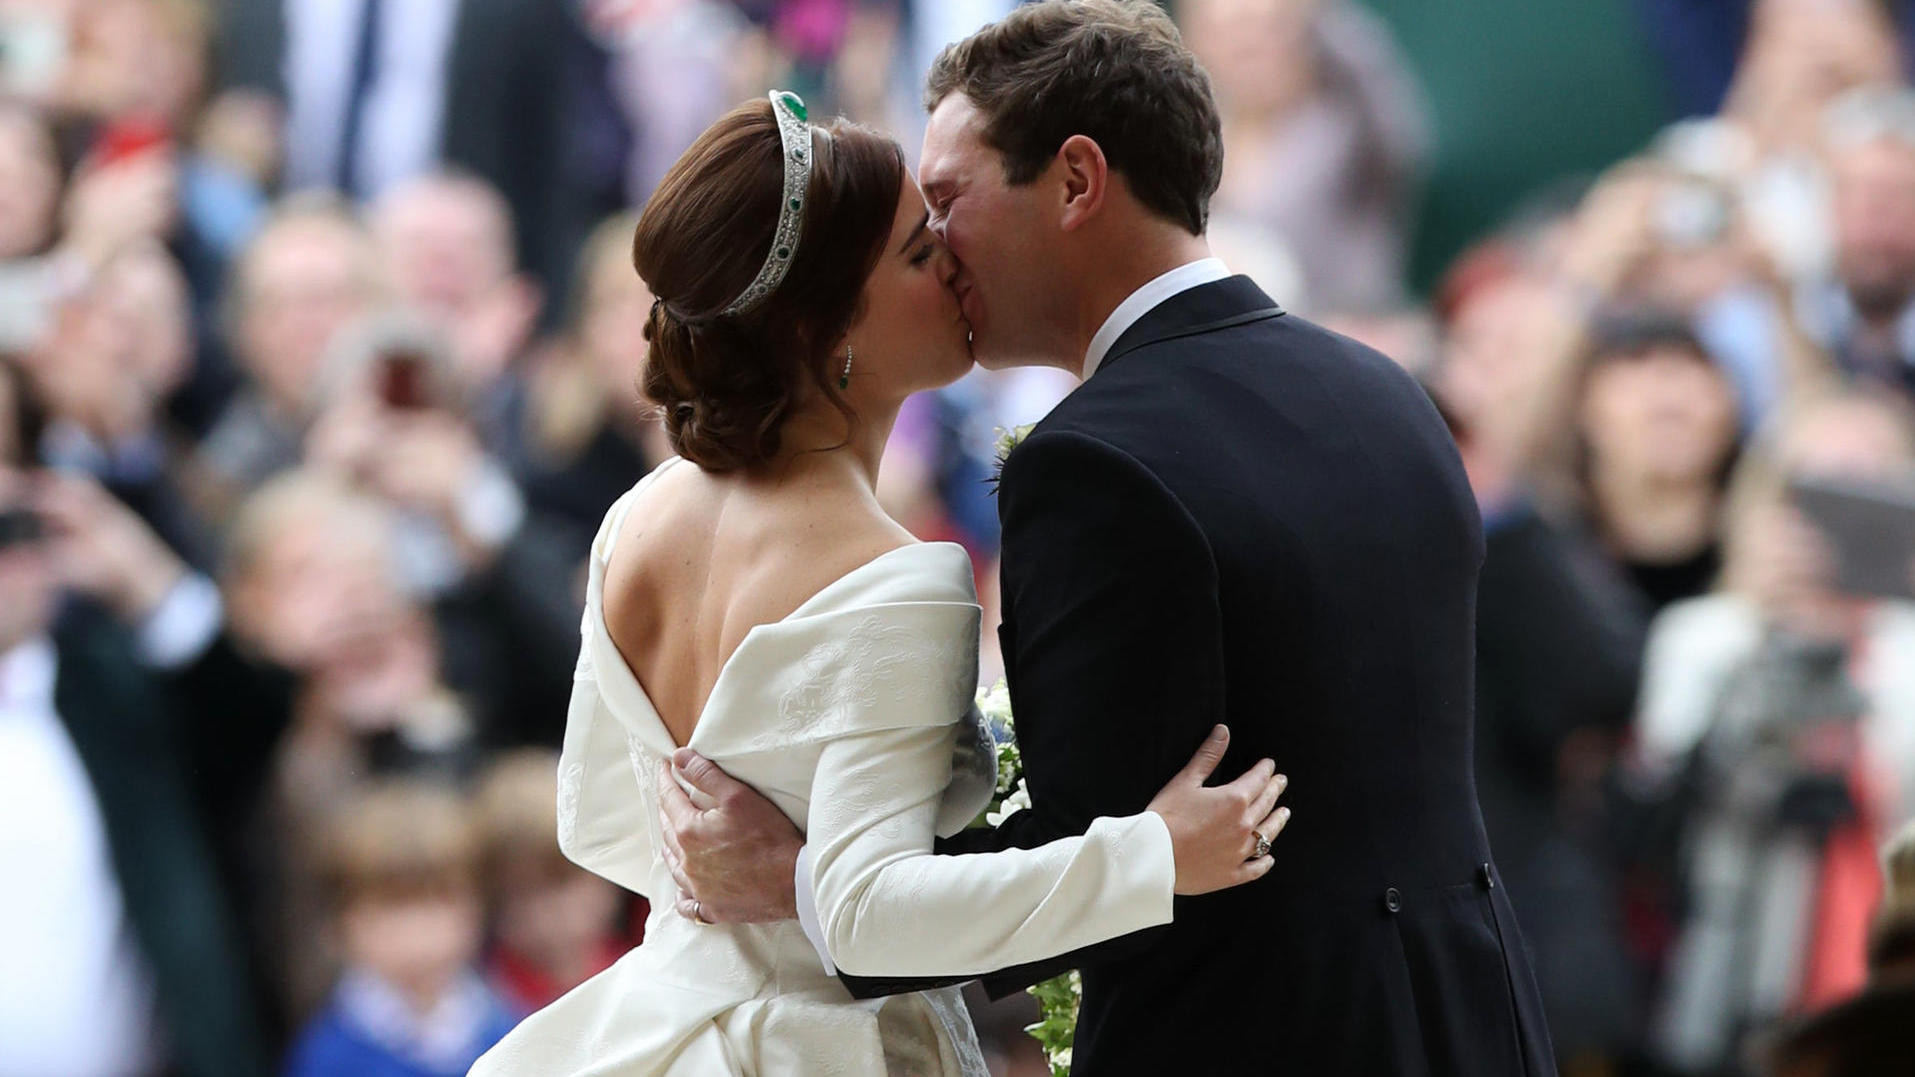 Hochzeit England Eugenie
 Royale Hochzeit Der erste Kuss von Prinzessin Eugenie und